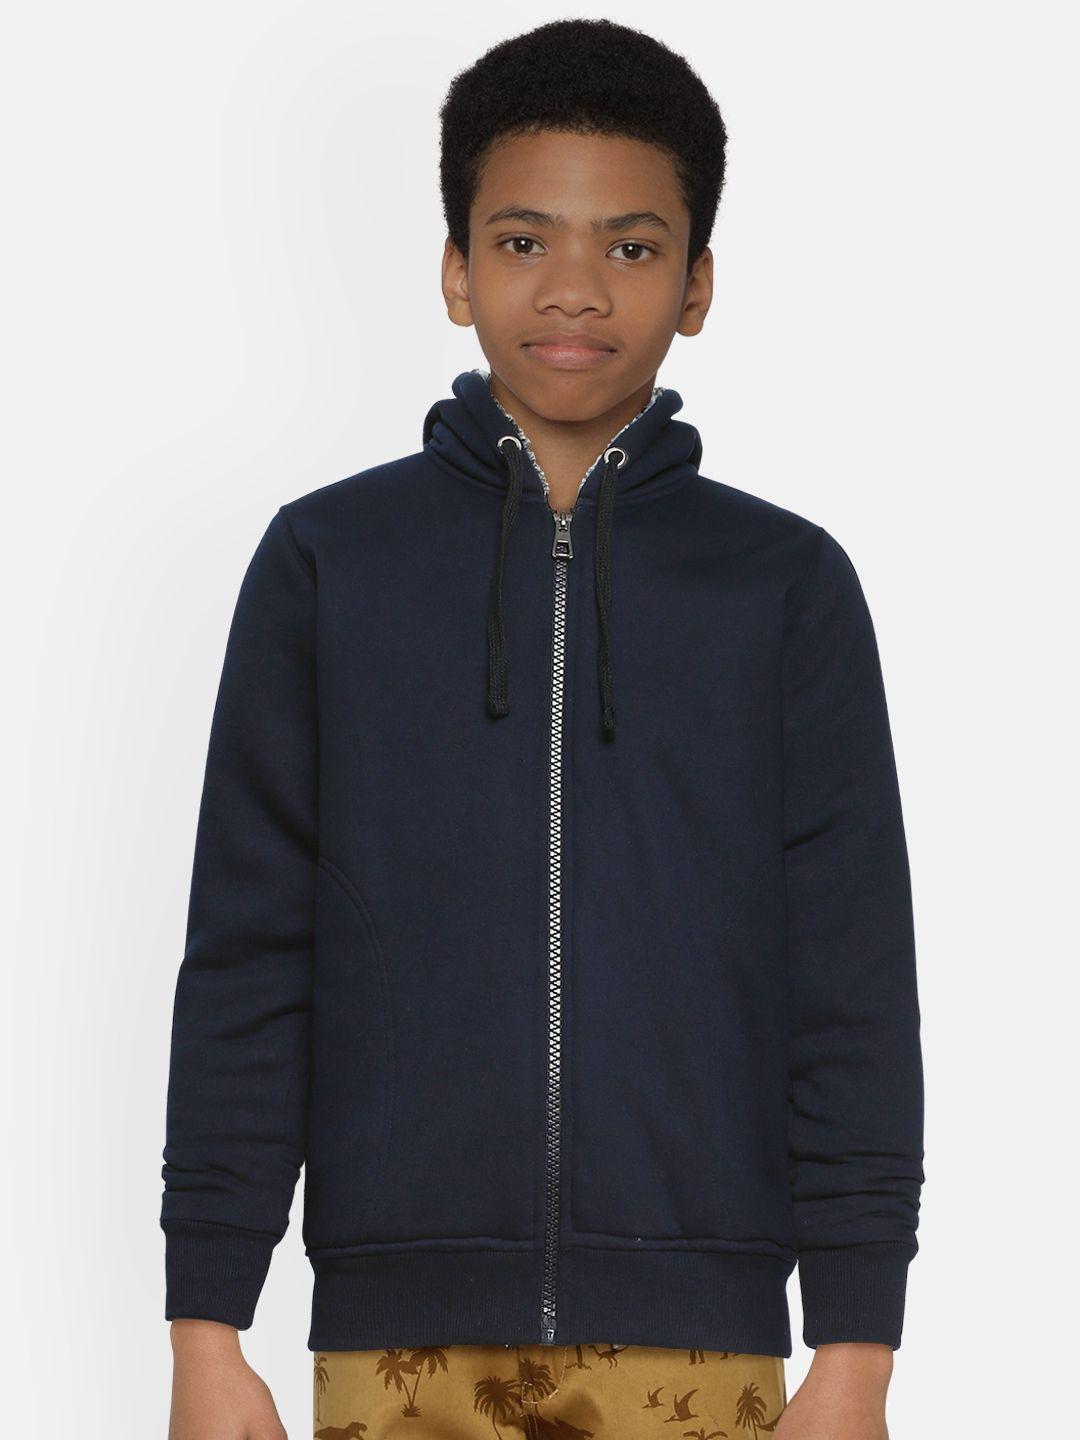 adbucks-boys-navy-blue-solid-hooded-sweatshirt